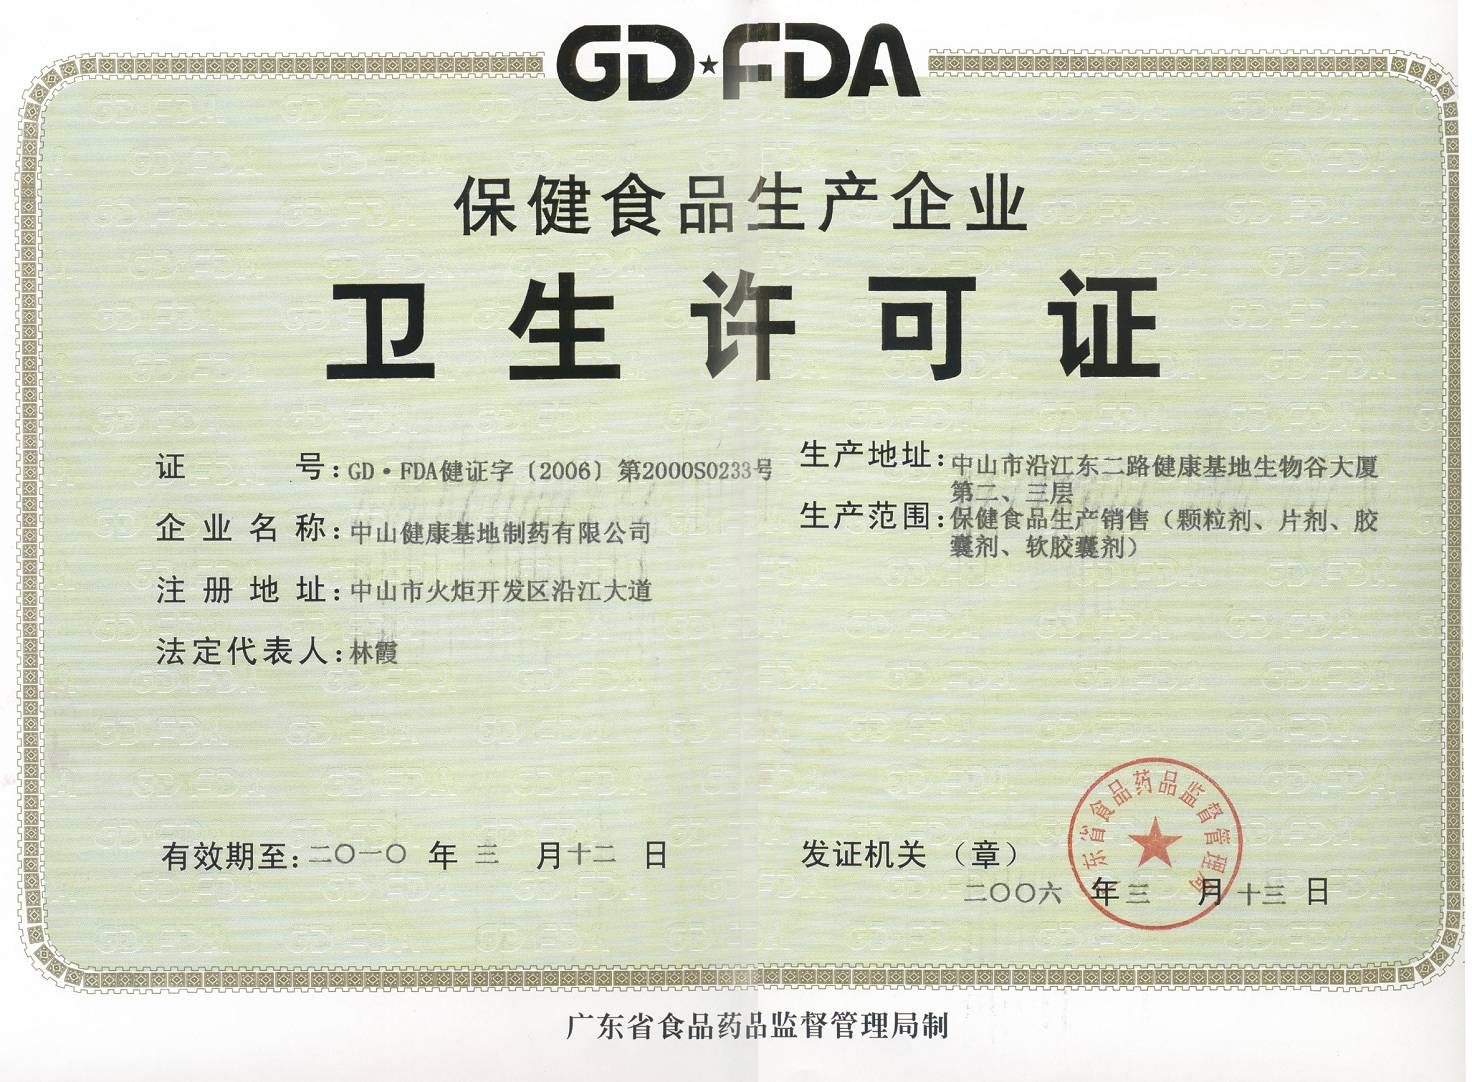 食品生产经营许可证中,这个编码CQM-61-1994